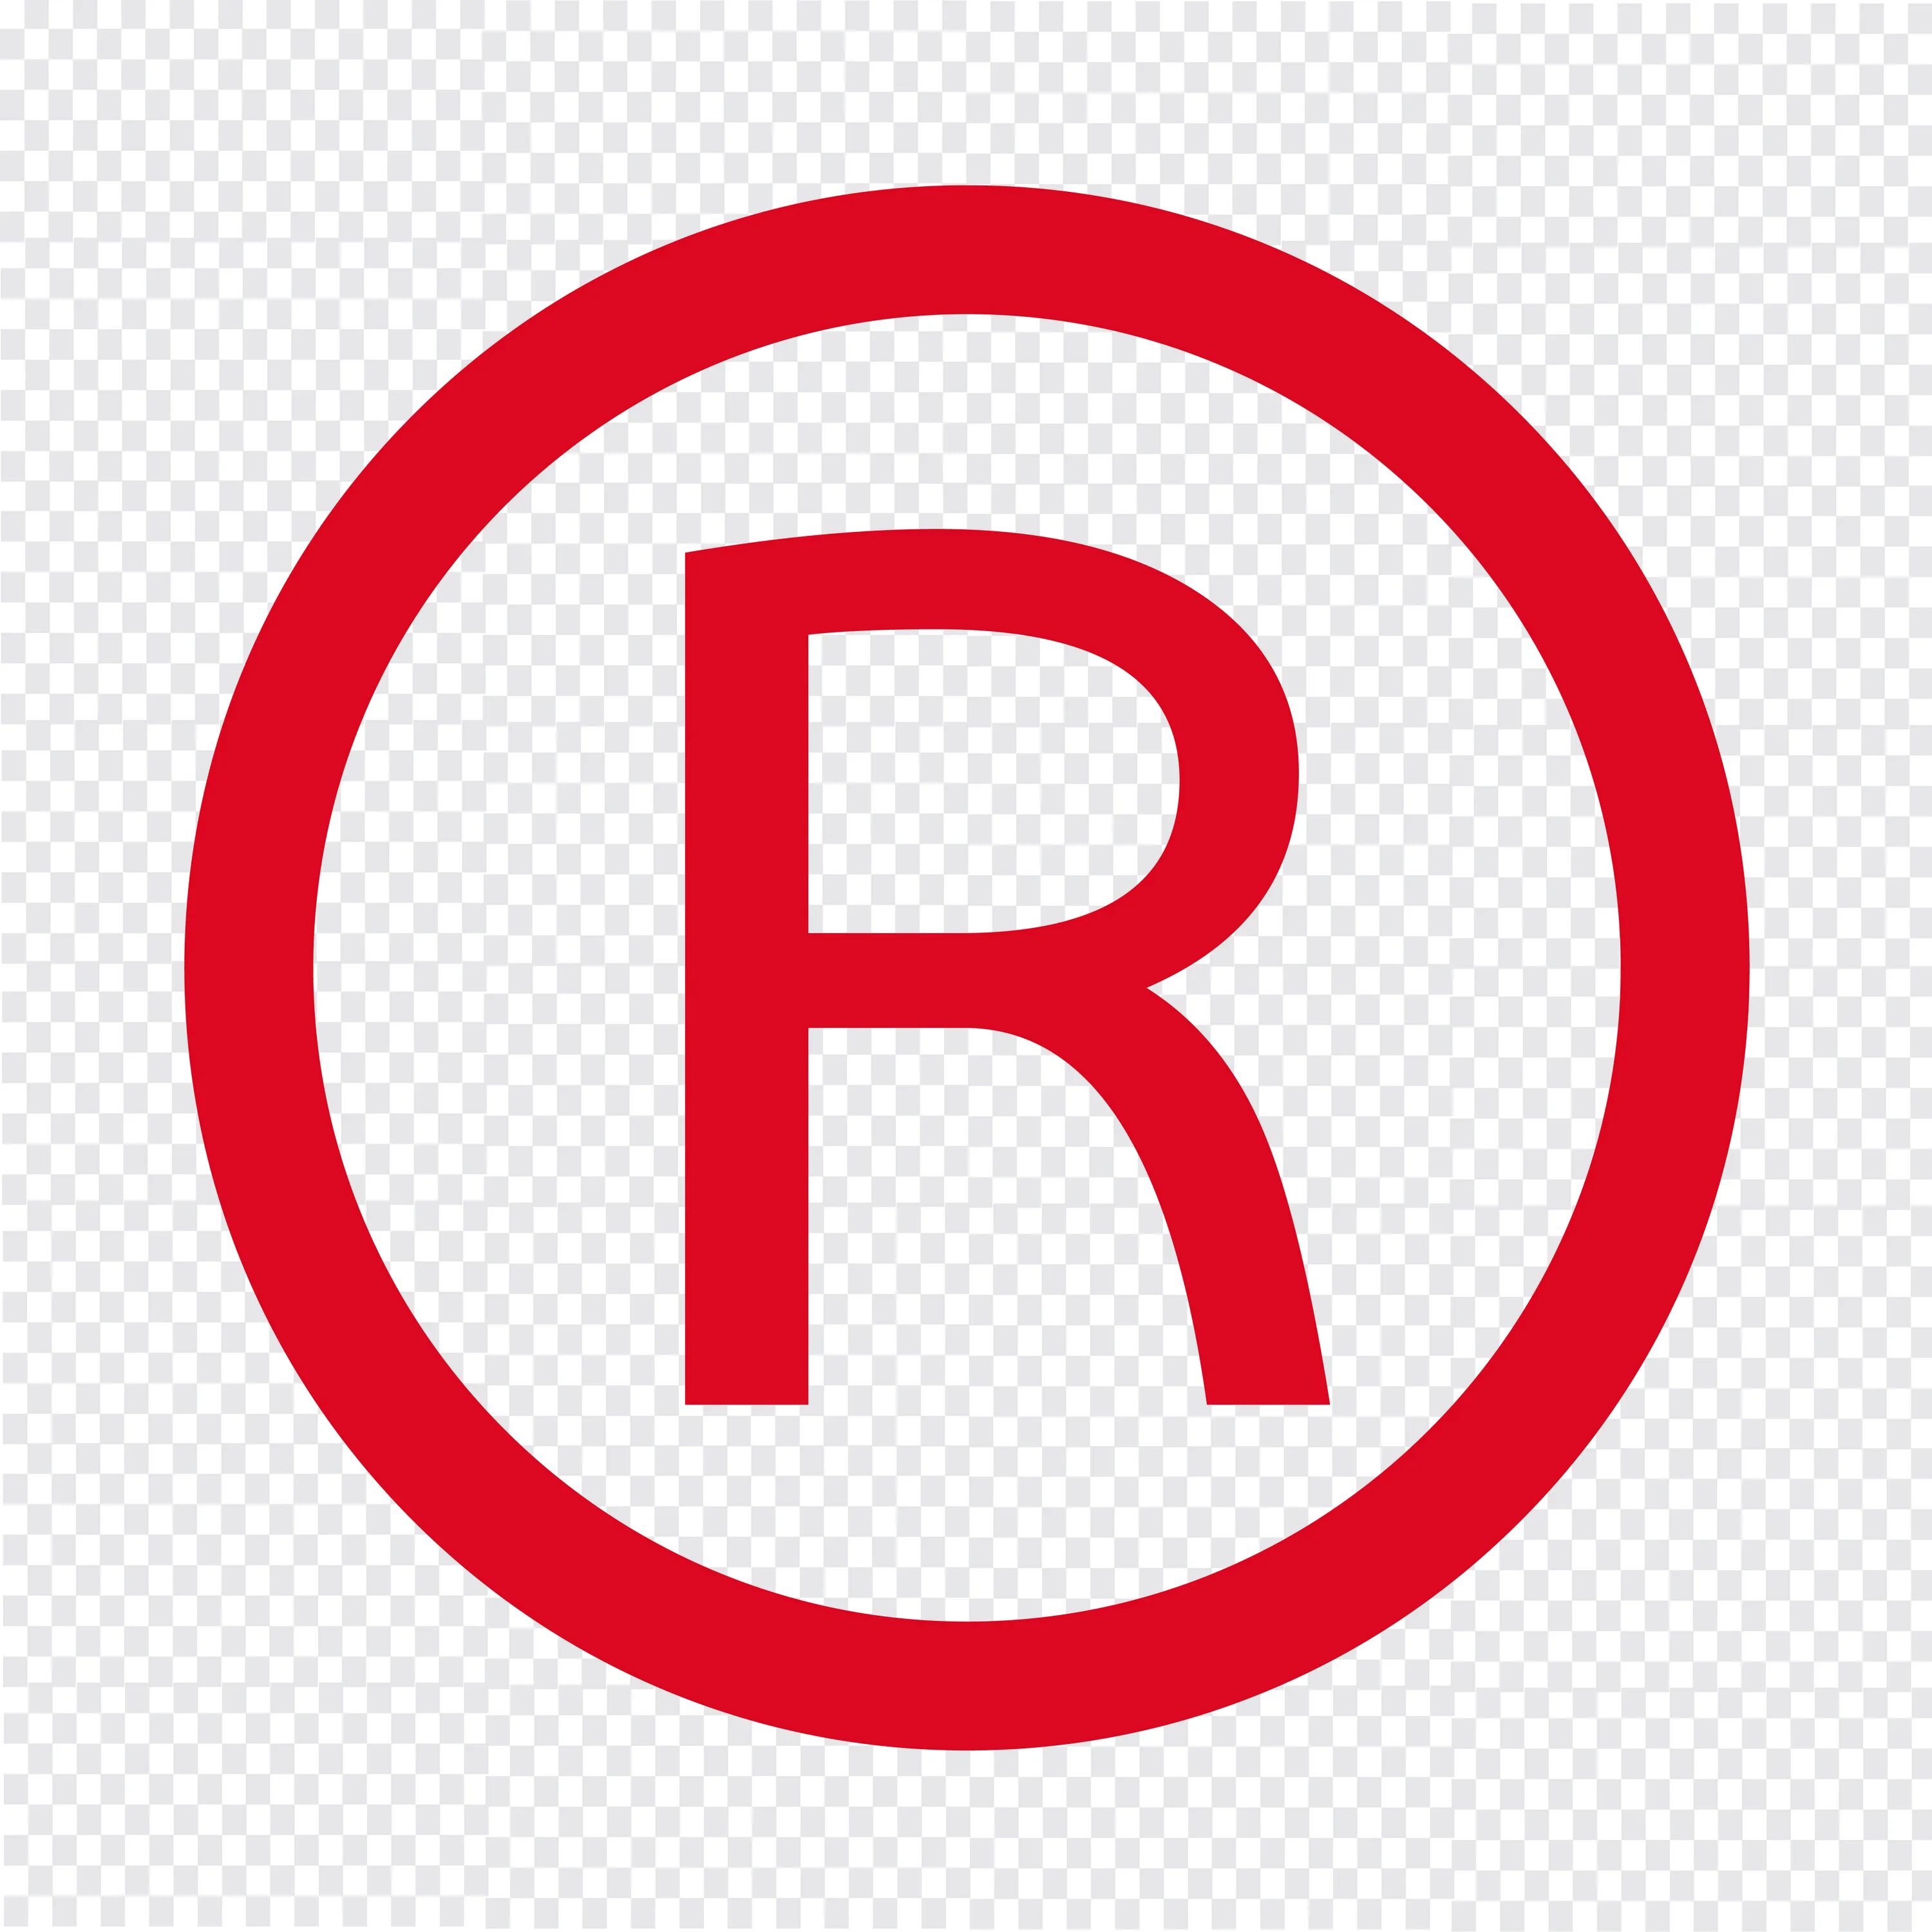 Буква r в кружочке. Знак торговой марки. Значок r. Знак зарегистрированной торговой марки. R quality